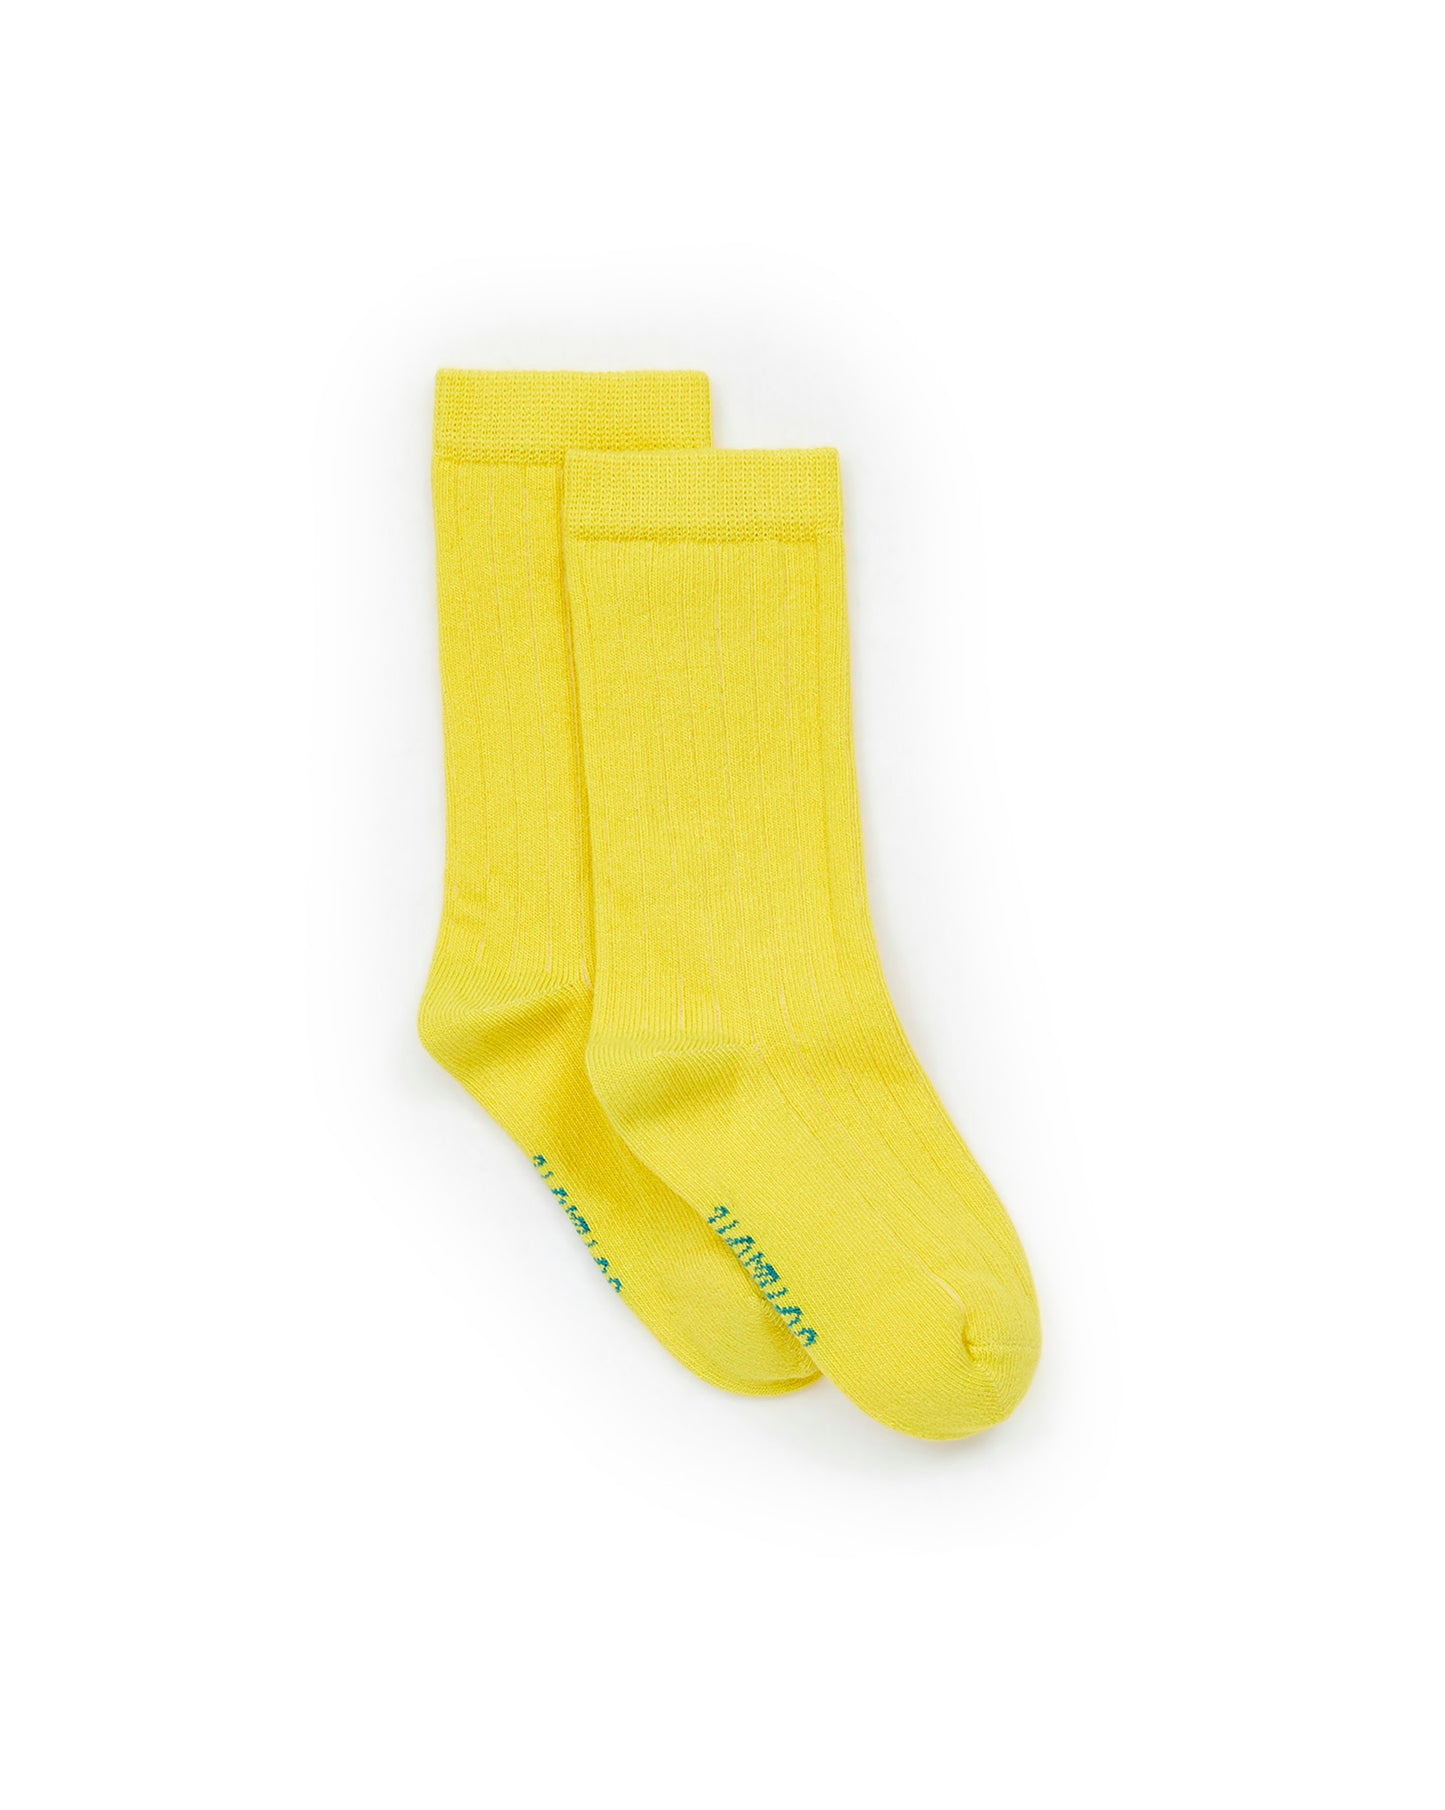 Sock - Yellow Girl